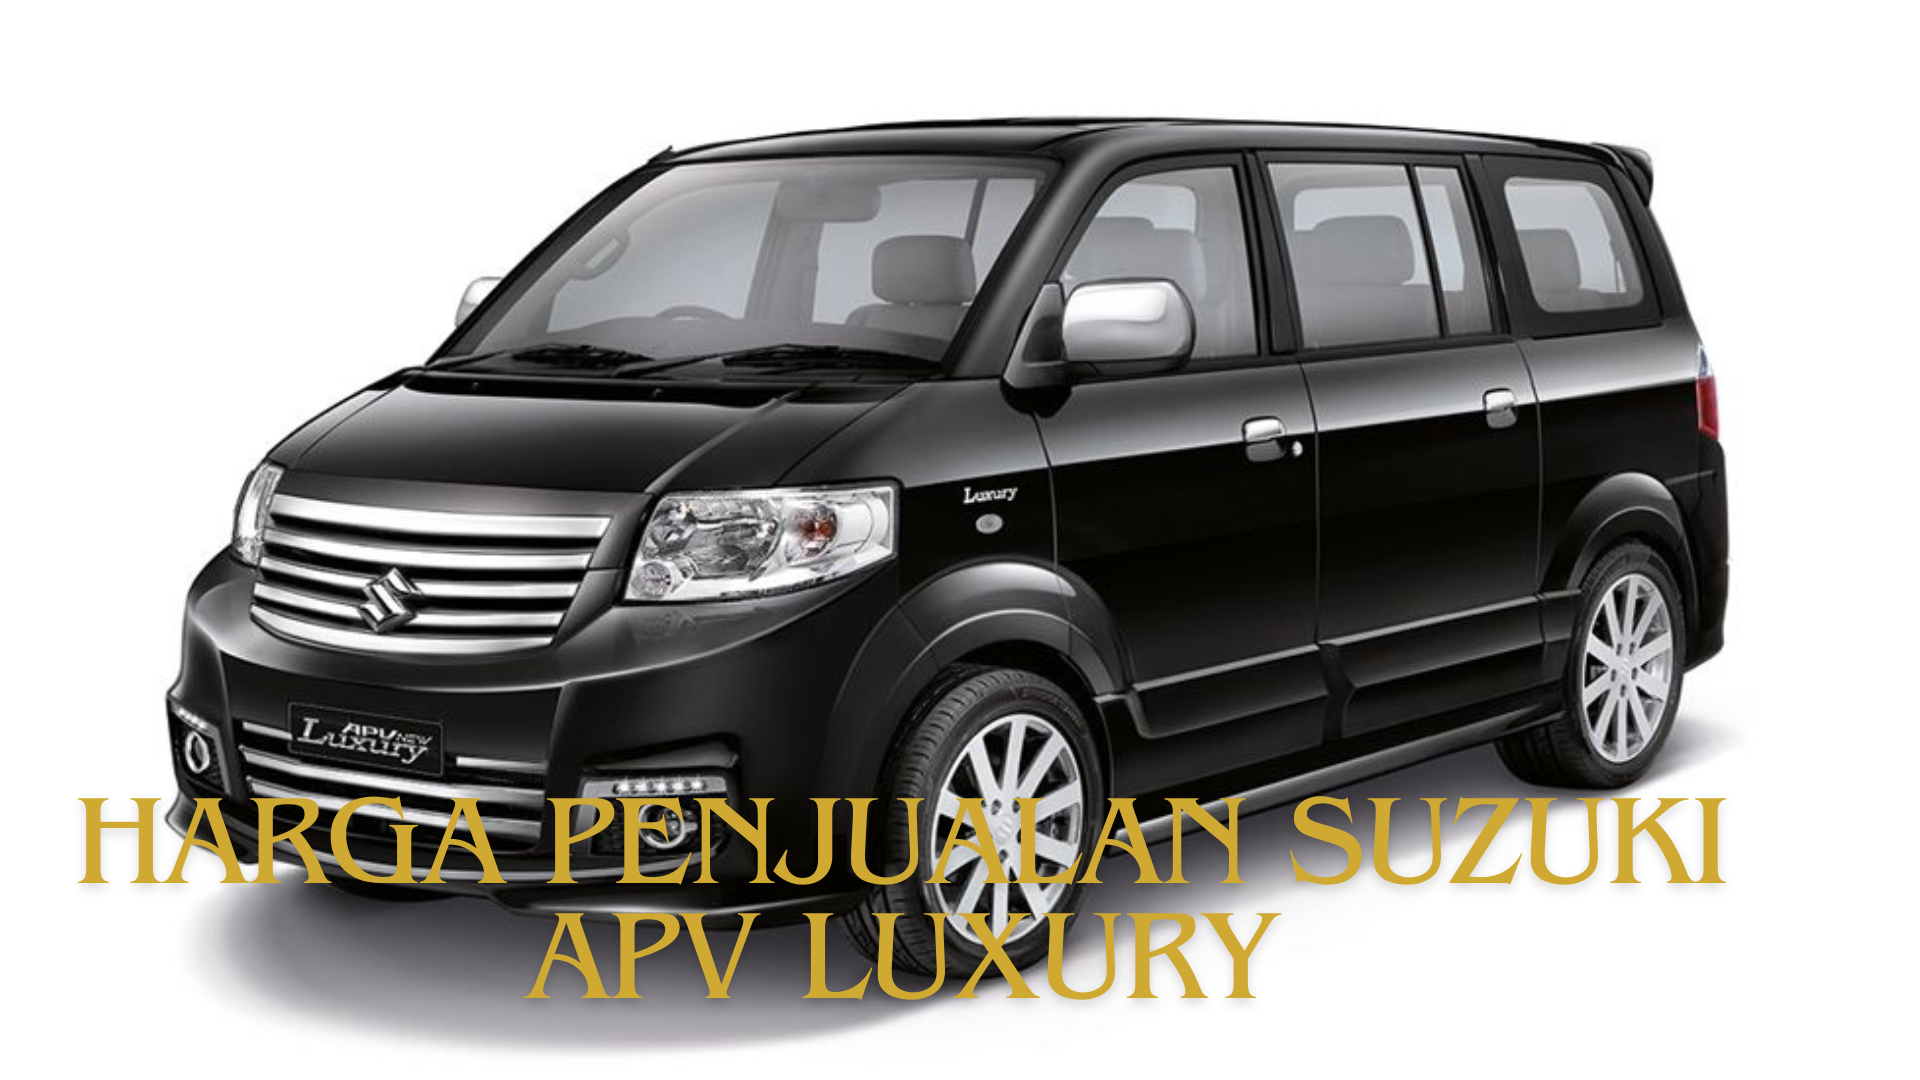 Harga Penjualan Suzuki APV Luxury Bertahan, Produksi Mobil Serbaguna Ini Terus Berlanjut